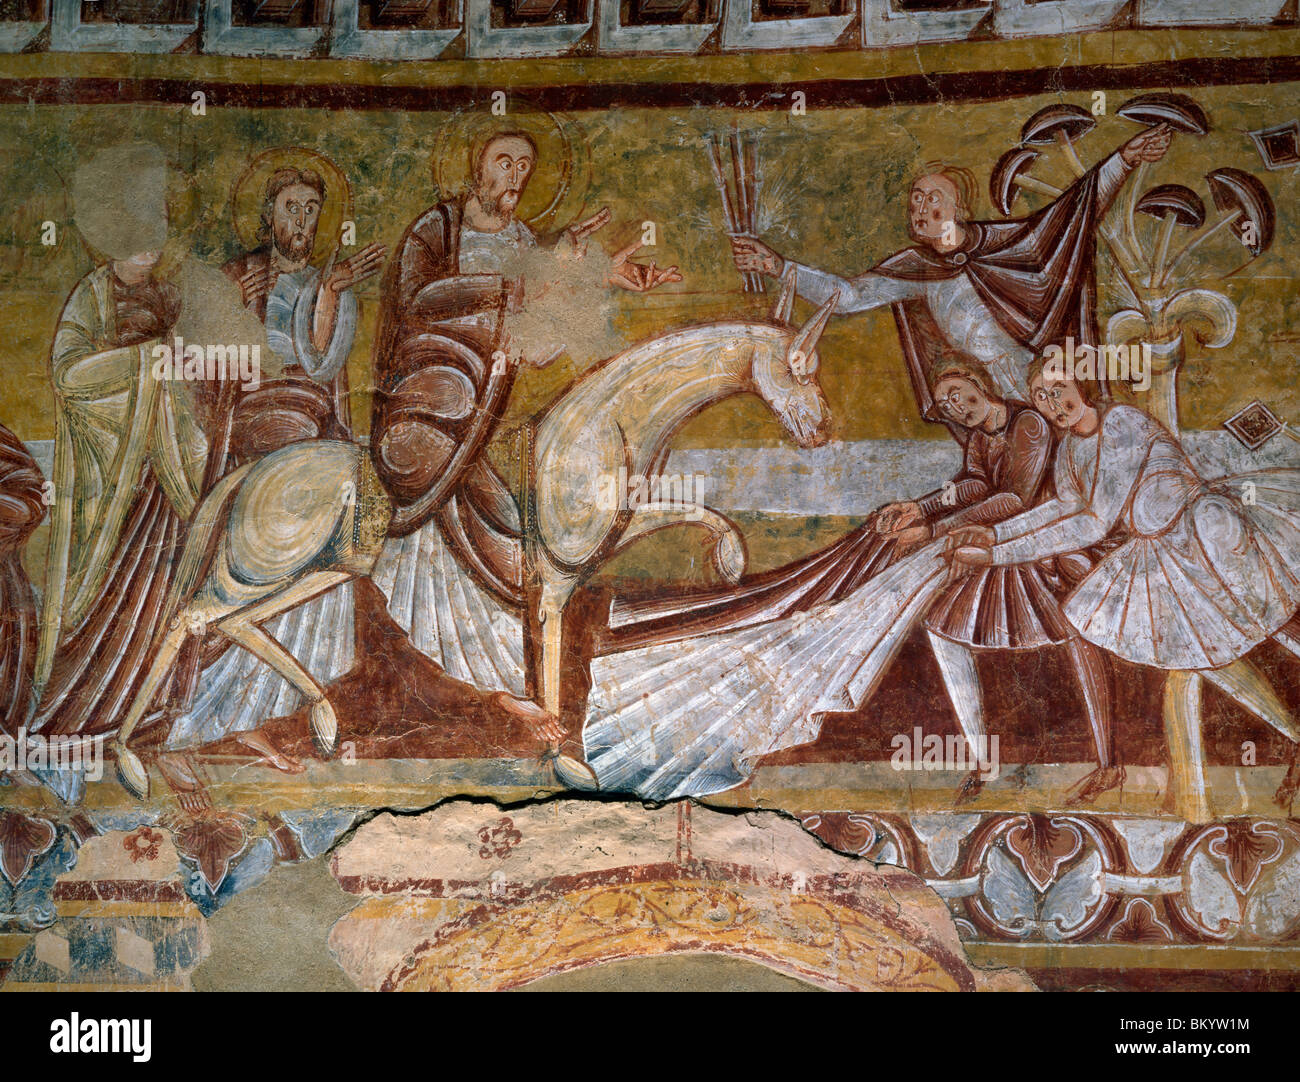 Escenas de la Biblia por artista desconocido, fresco, del siglo XII. Foto de stock